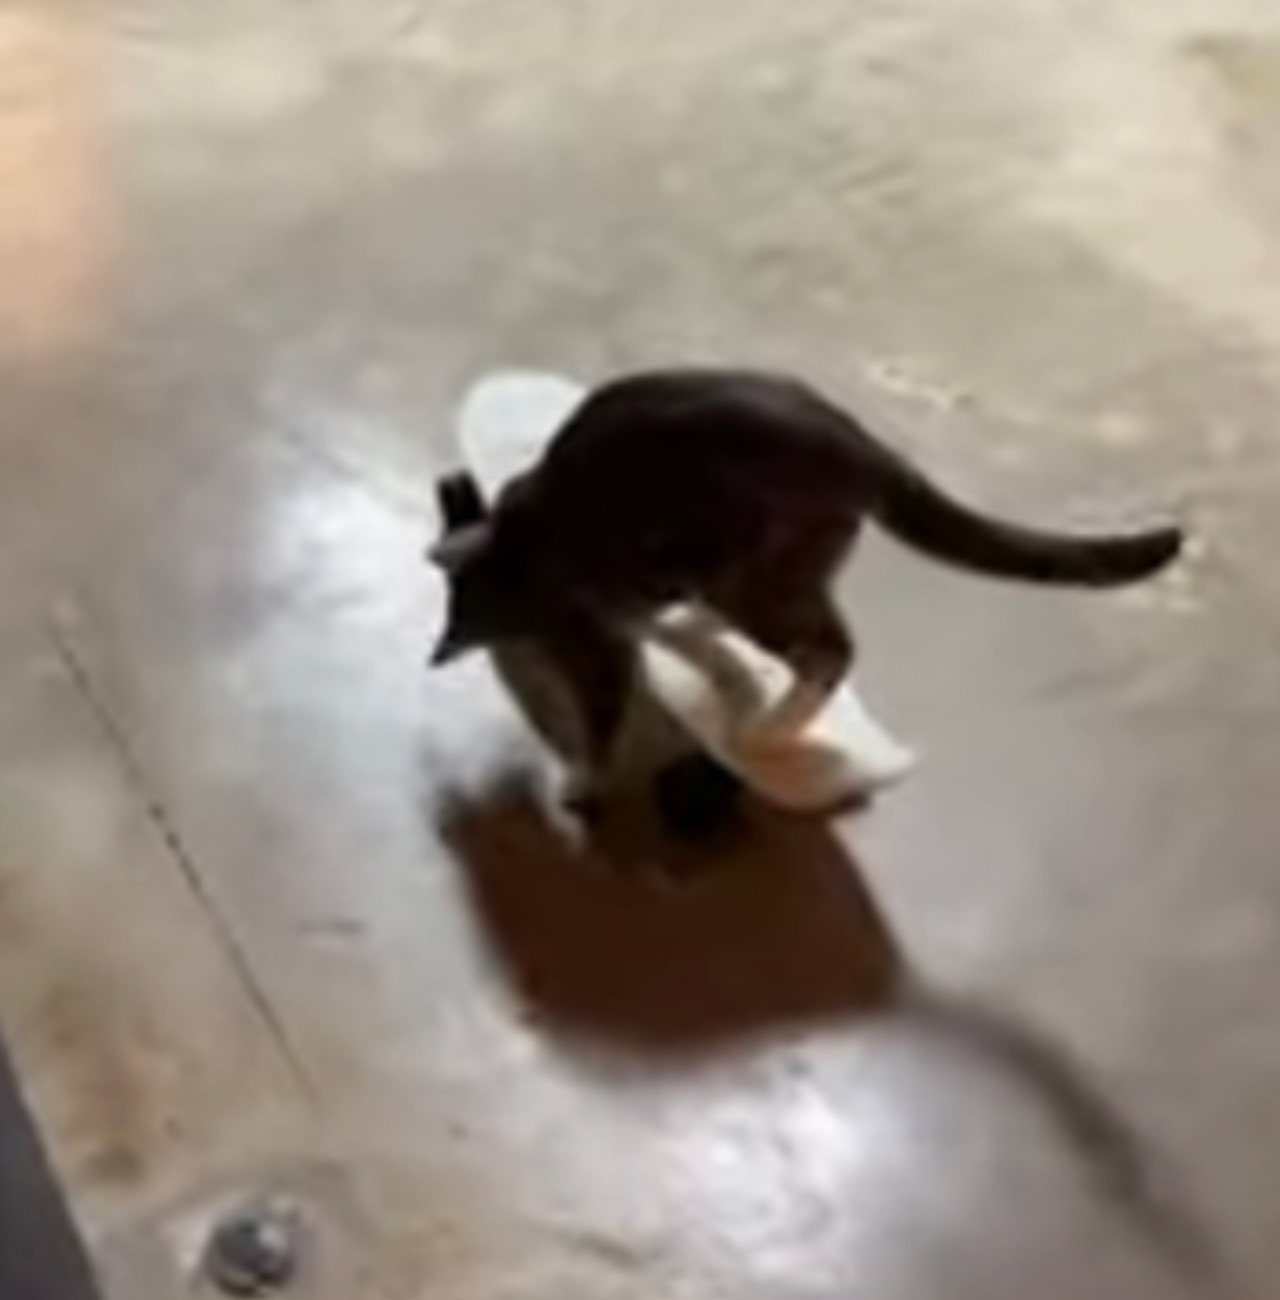 Gattina va sullo skate